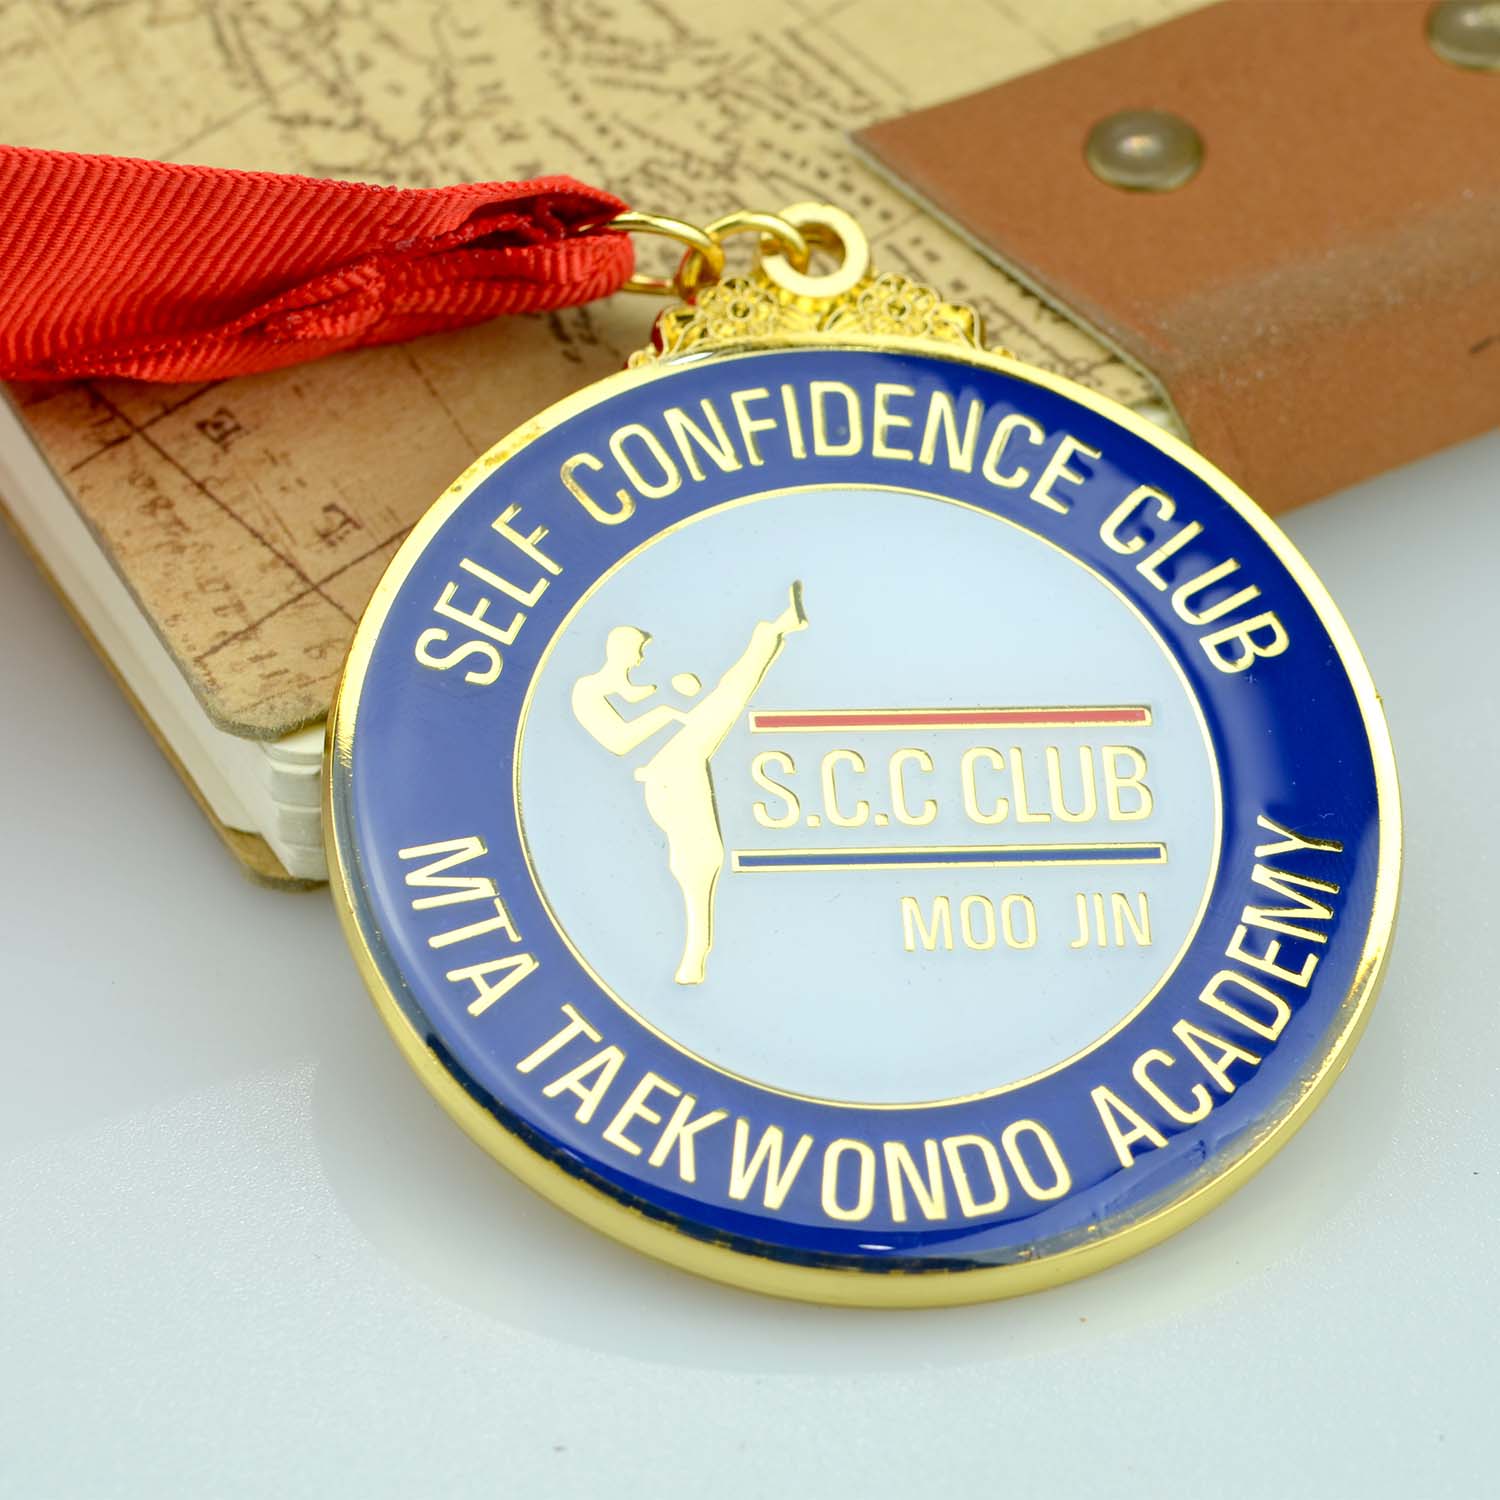 Hytaý medal öndüriji üpjün ediji örtükli “Glod Custom metal” taekwondo medal eýesi (6)